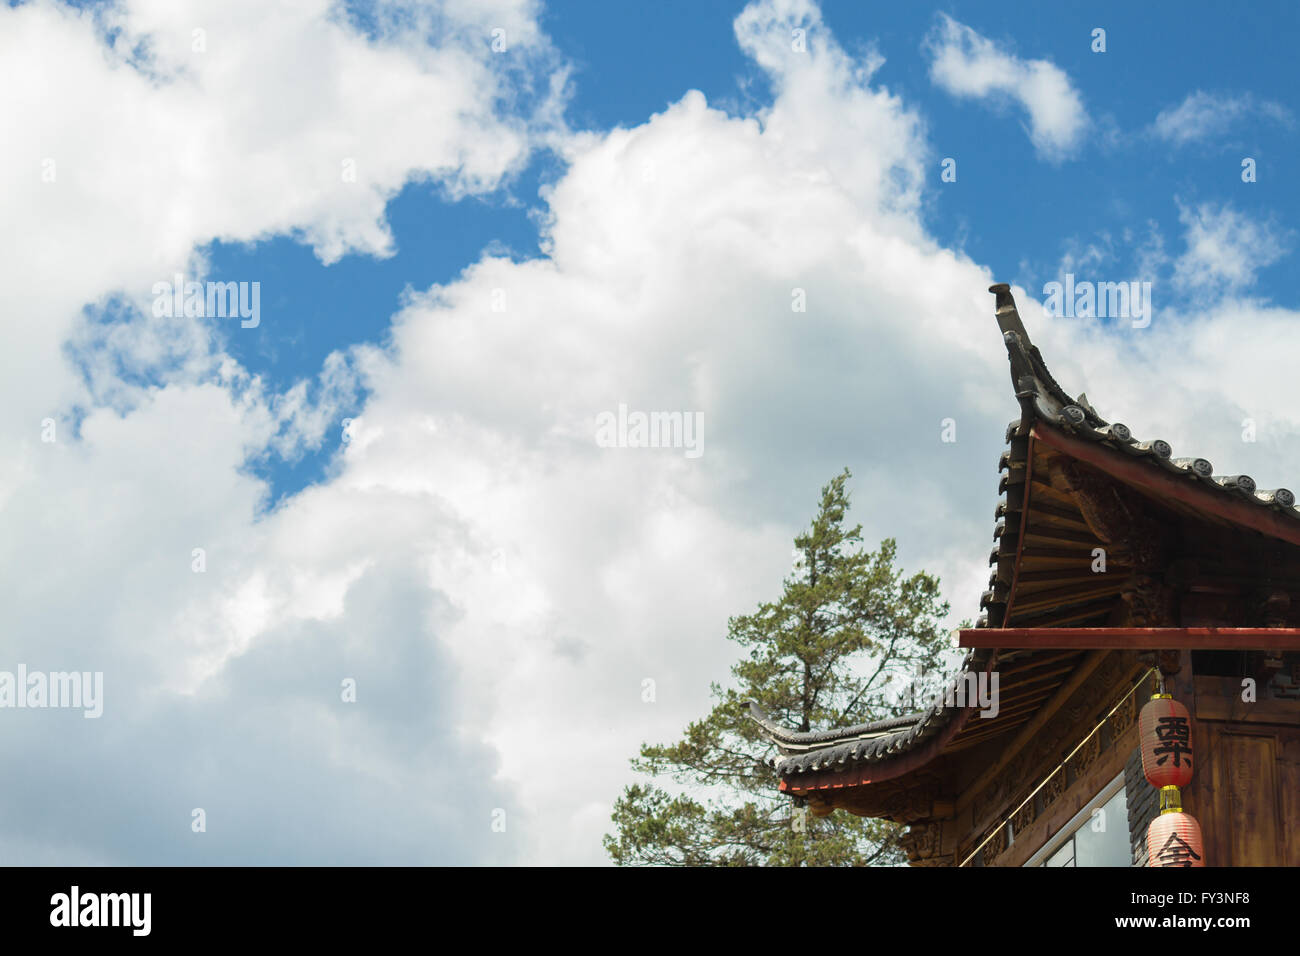 Cinese tradizionale tetto curvo (spazzamento curvatura) con lanterne rosse contro il cielo nuvoloso della provincia dello Yunnan Foto Stock